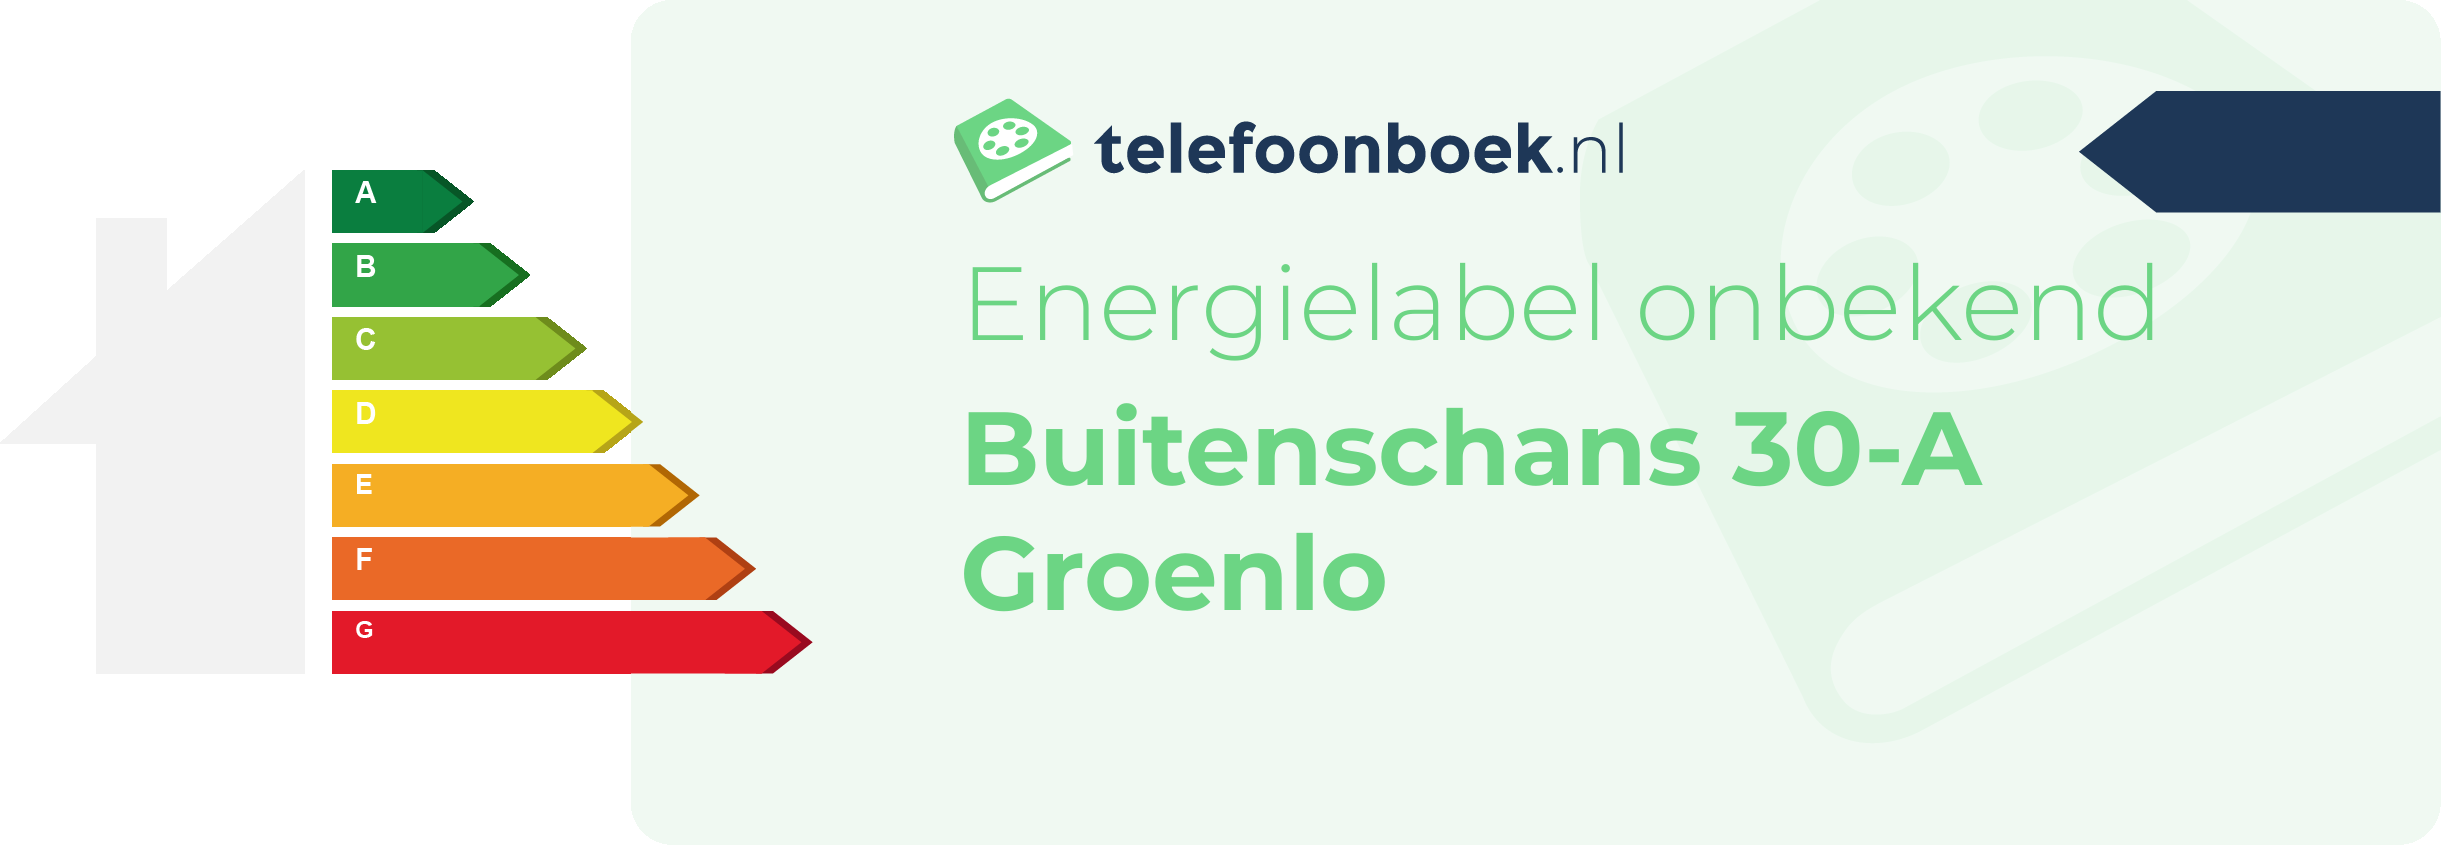 Energielabel Buitenschans 30-A Groenlo